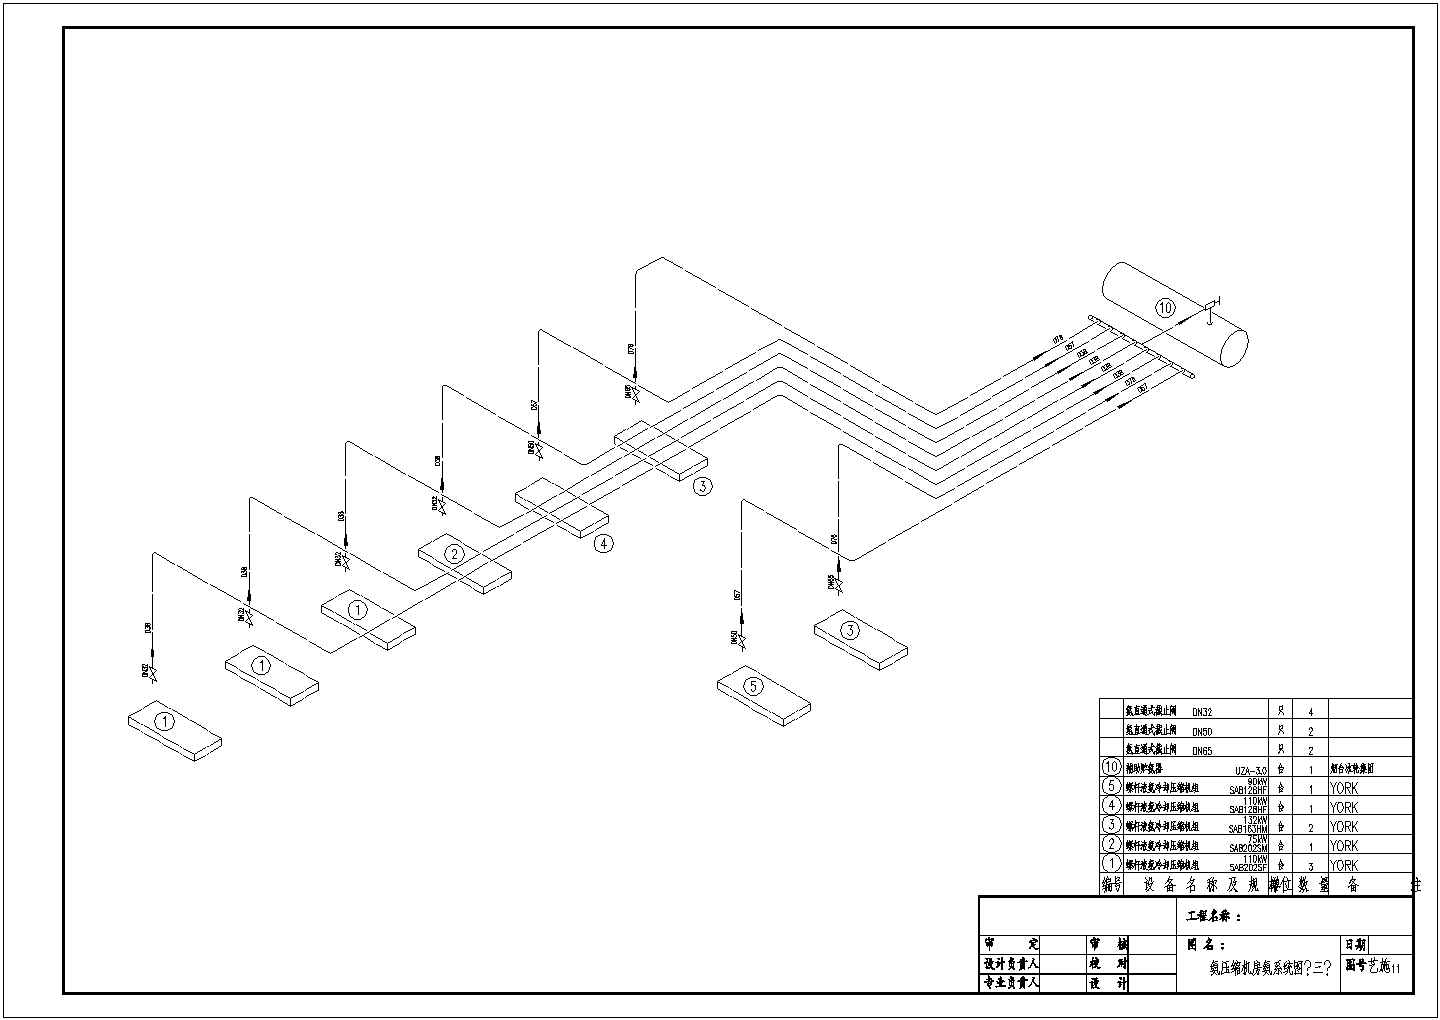 苏州某食品工厂大型冷库全套施工设计cad图(含氨压缩机房氨系统图)